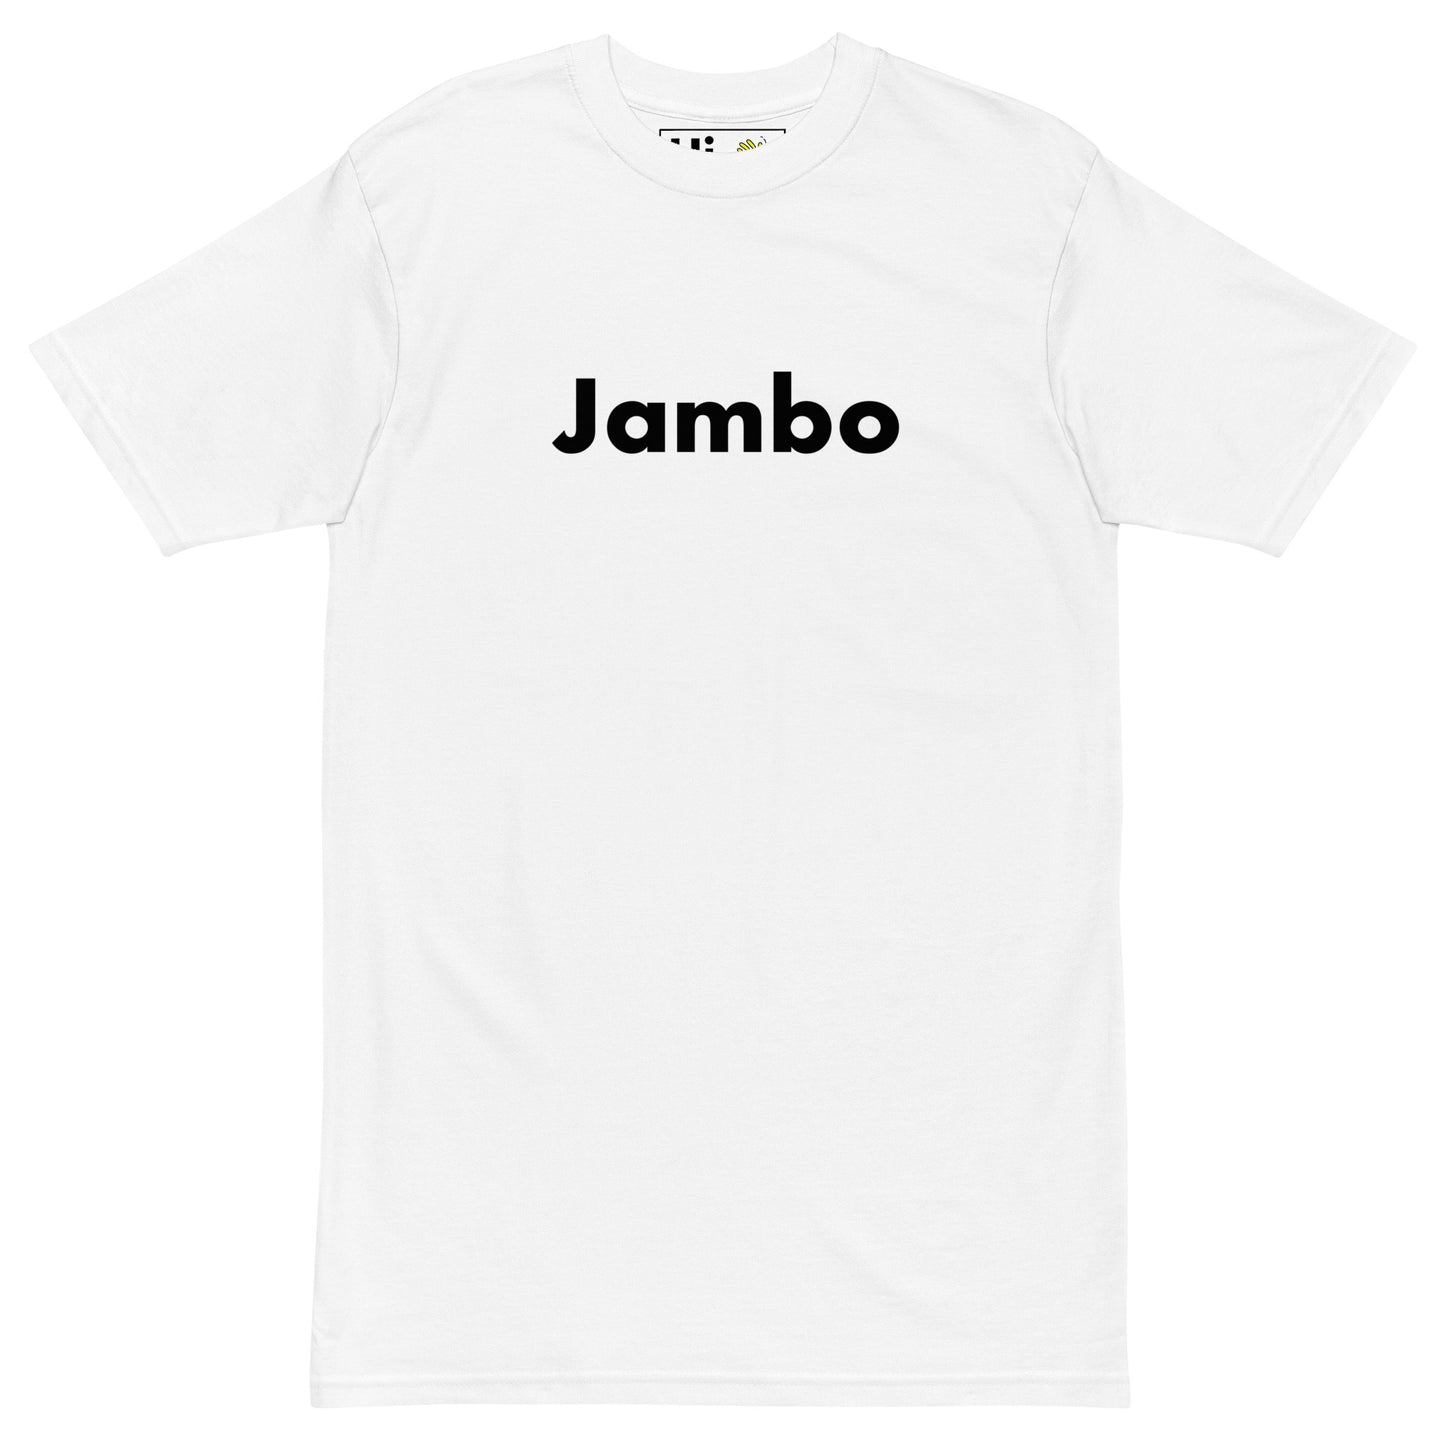 Hi Jambo Swahili